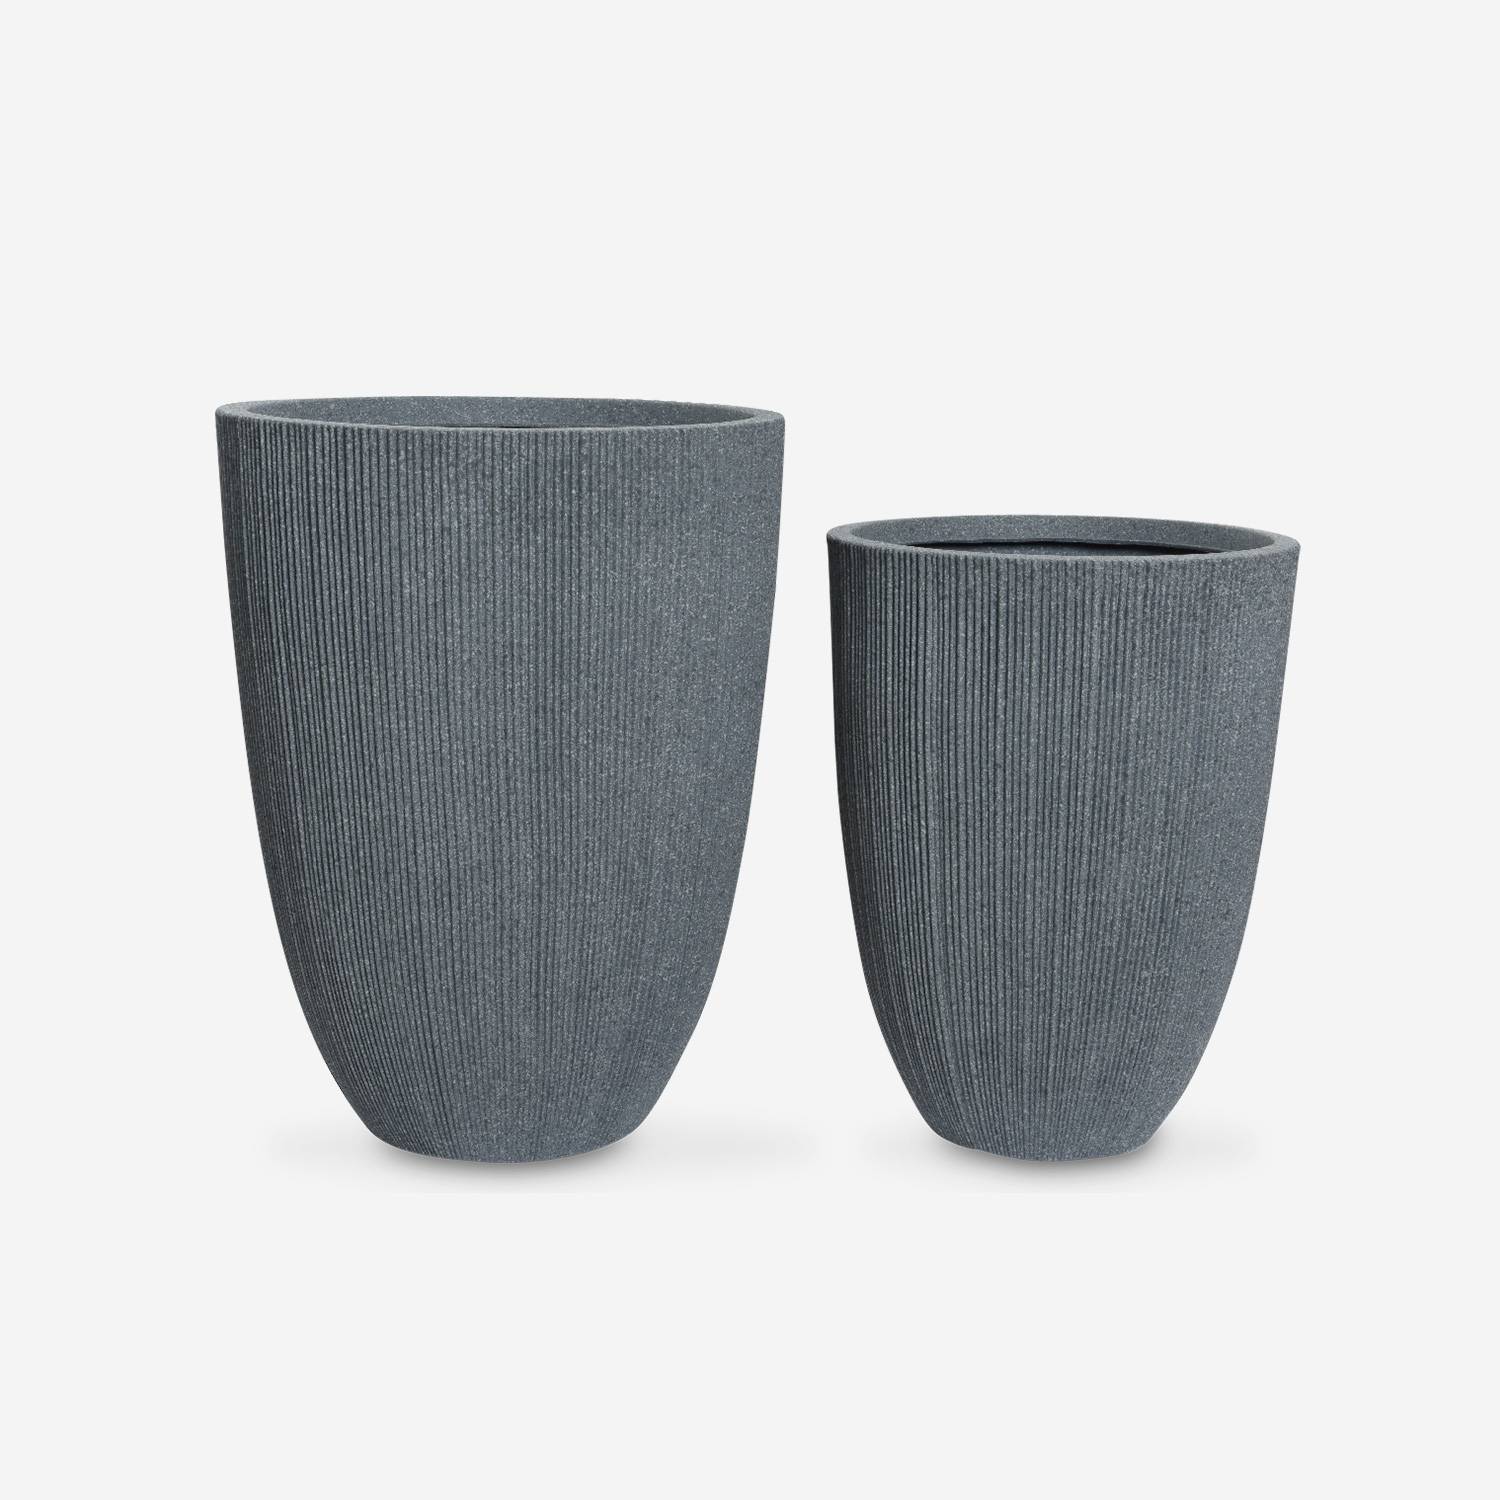 Set de 2 bacs à fleurs – TIARE – vases en plastique, 2 tailles, cylindriques, gris foncé, emboitables  Photo3